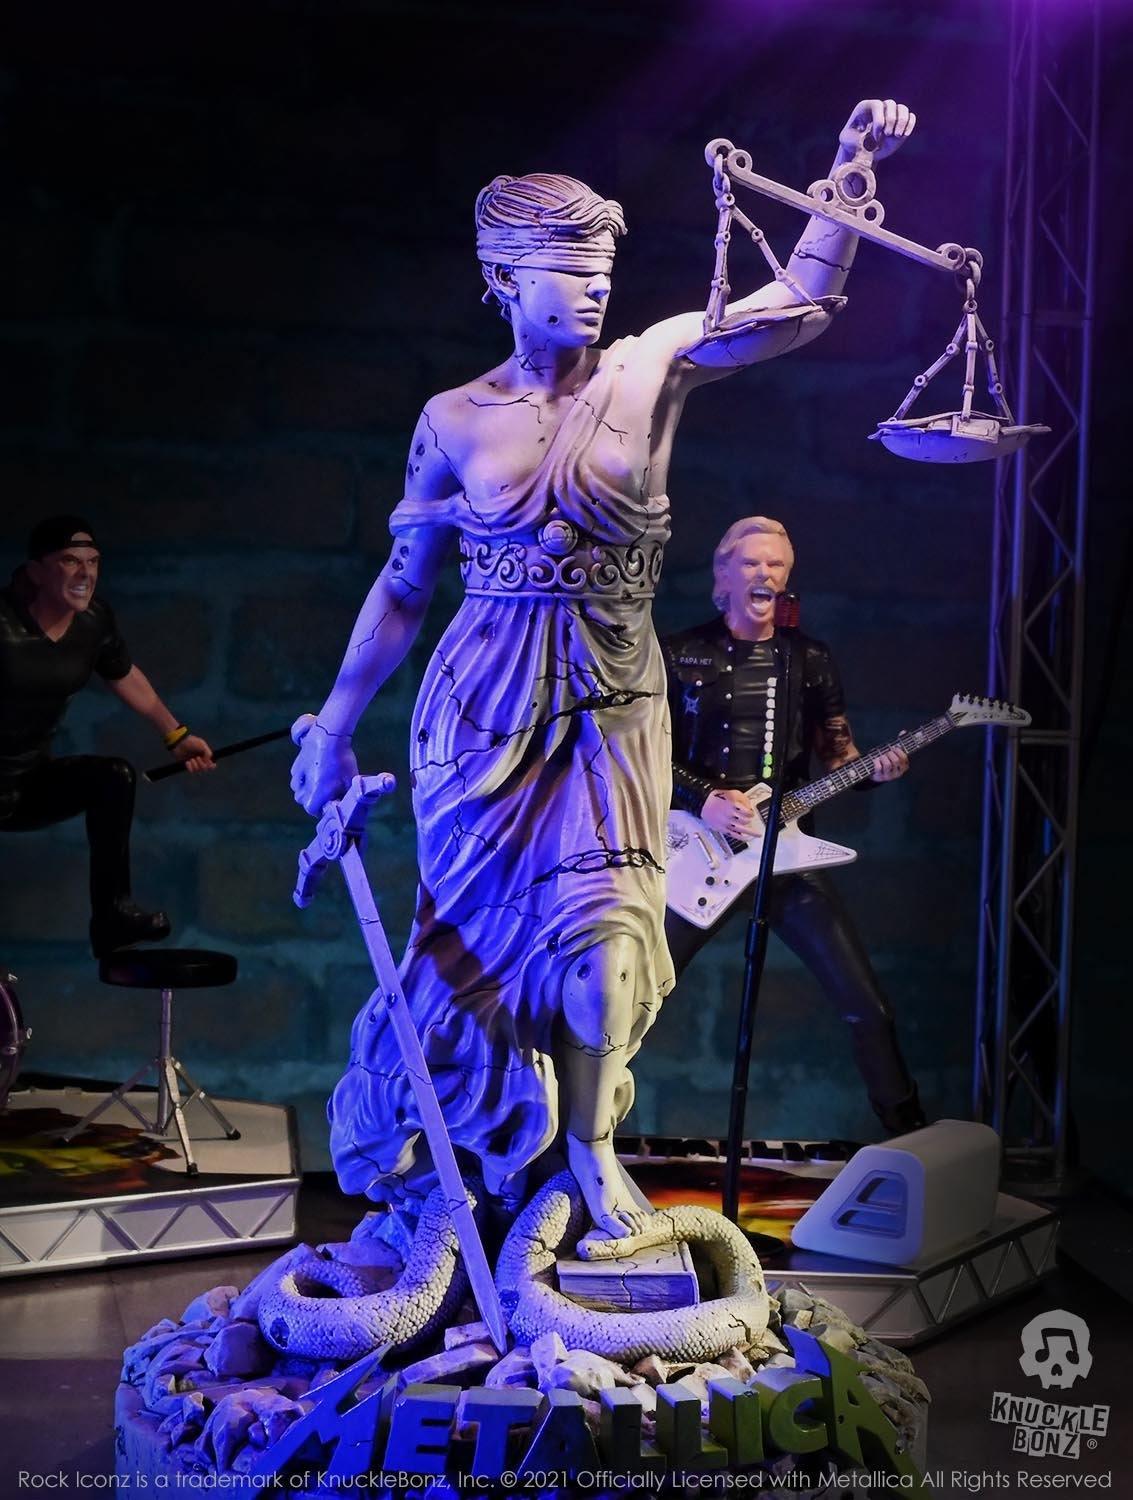 KNULADYJUSTICE100 Metallica - Lady Justice Rock Iconz Statue - KnuckleBonz - Titan Pop Culture